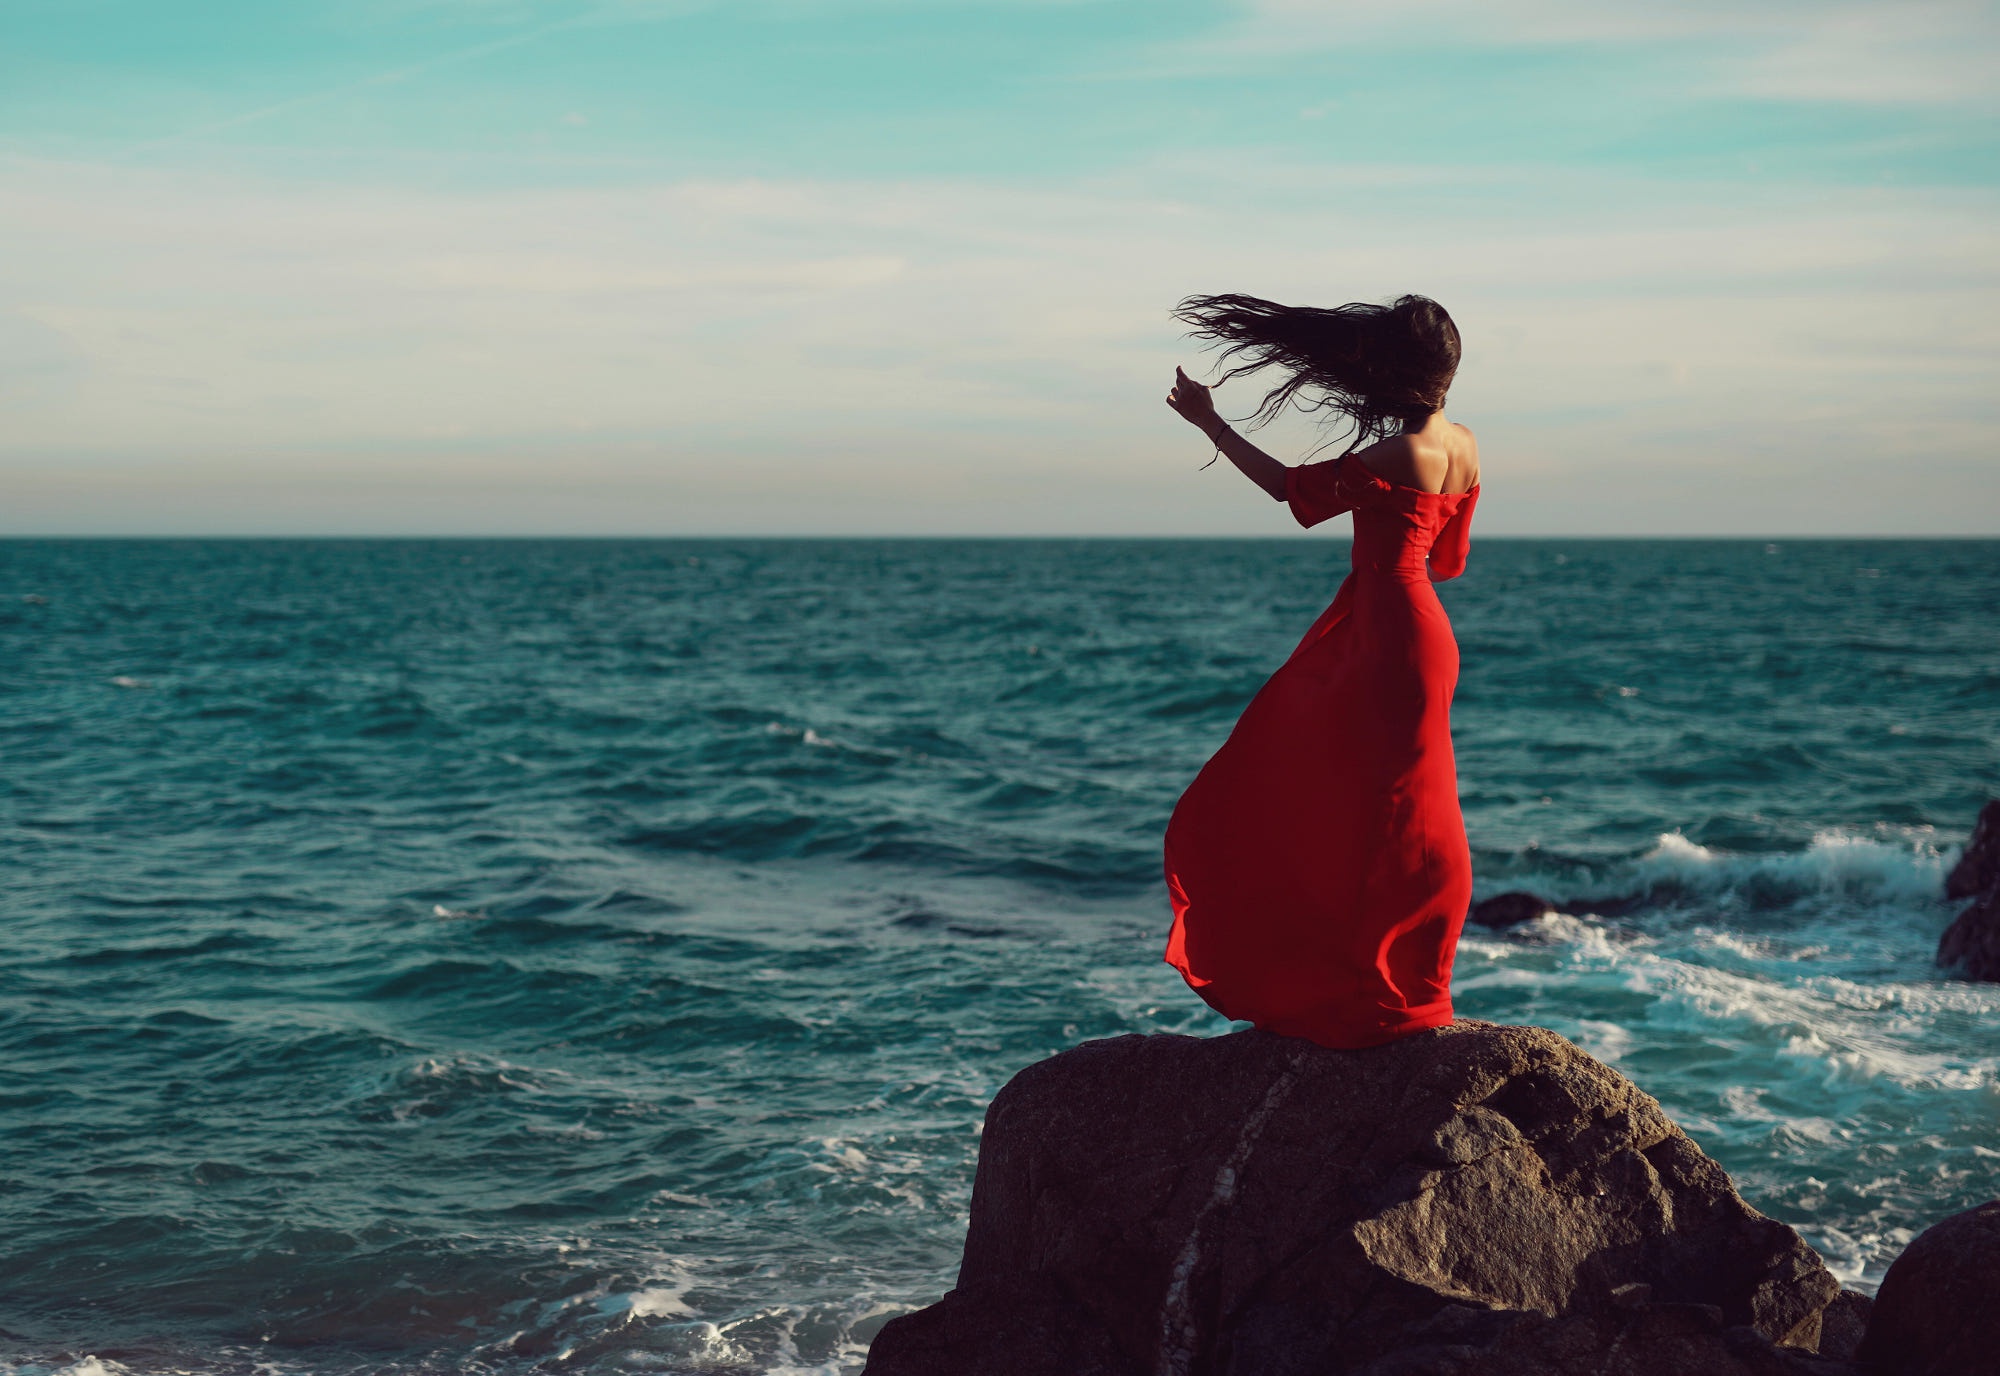 Фото девушки спиной на море. Девушка-море. Девушка со спины. Девушка на берегу моря. Девушка на скале у моря.